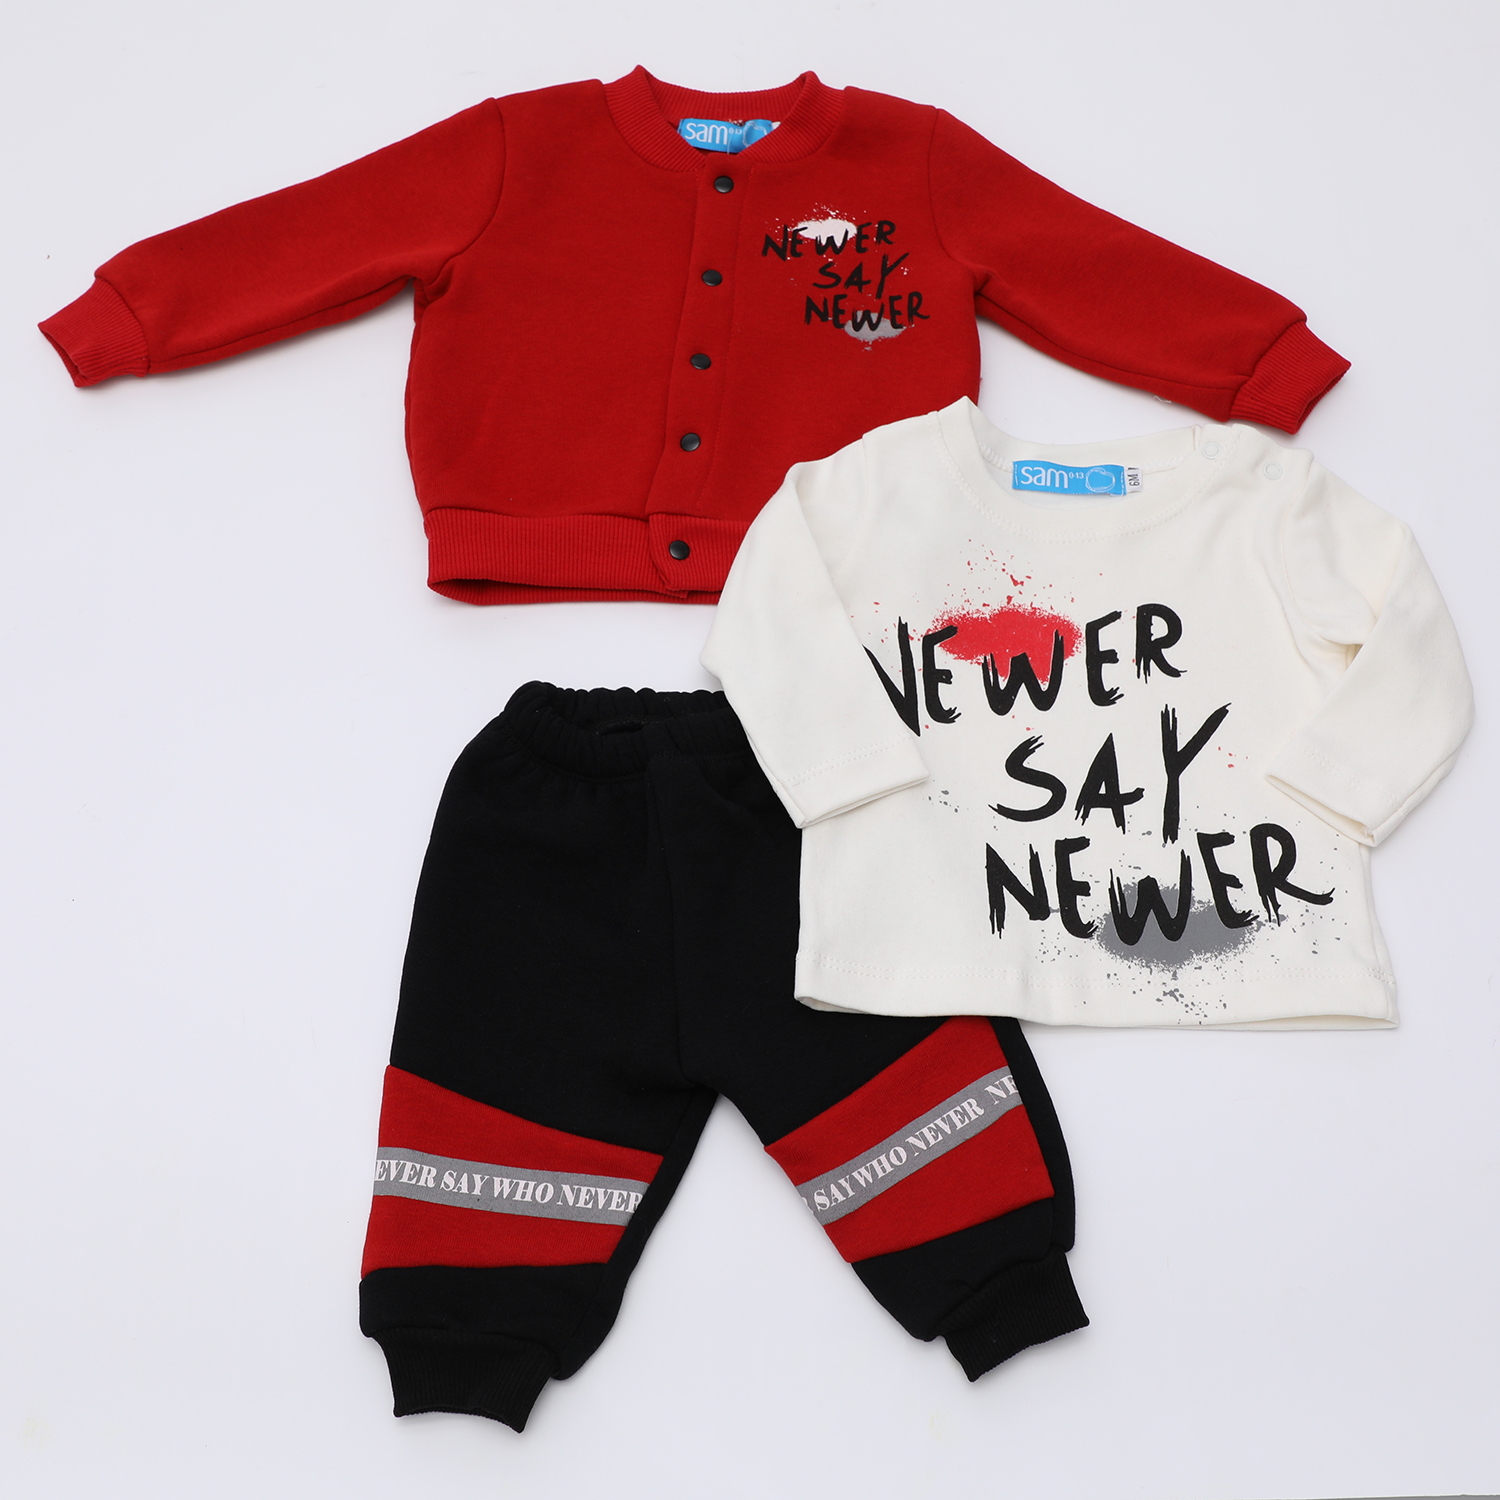 Παιδικά/Baby/Ρούχα/Σετ SAM 0-13 - Βρεφικό σετ από φόρμα, μπλούζα και ζακέτα SAM 0-13 NEWER SAY NEWER κόκκινο μαύρο